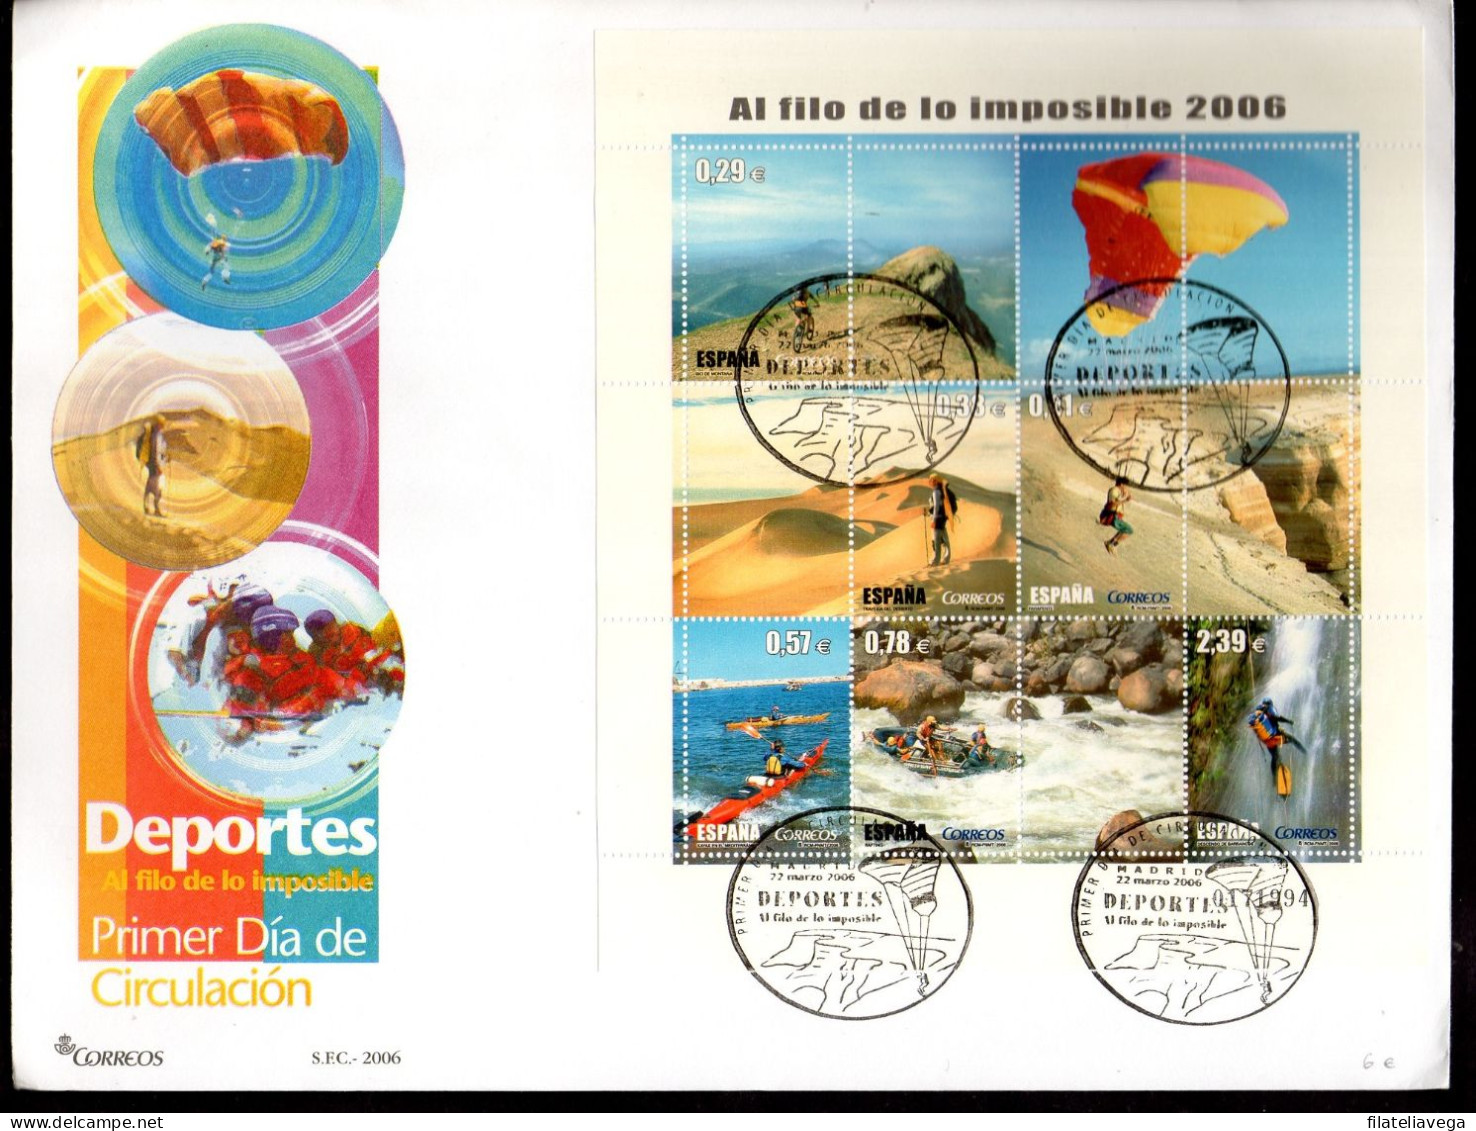 España Lote de 57 sobres de primer día Año 2006 Valor catálogo 288.0€